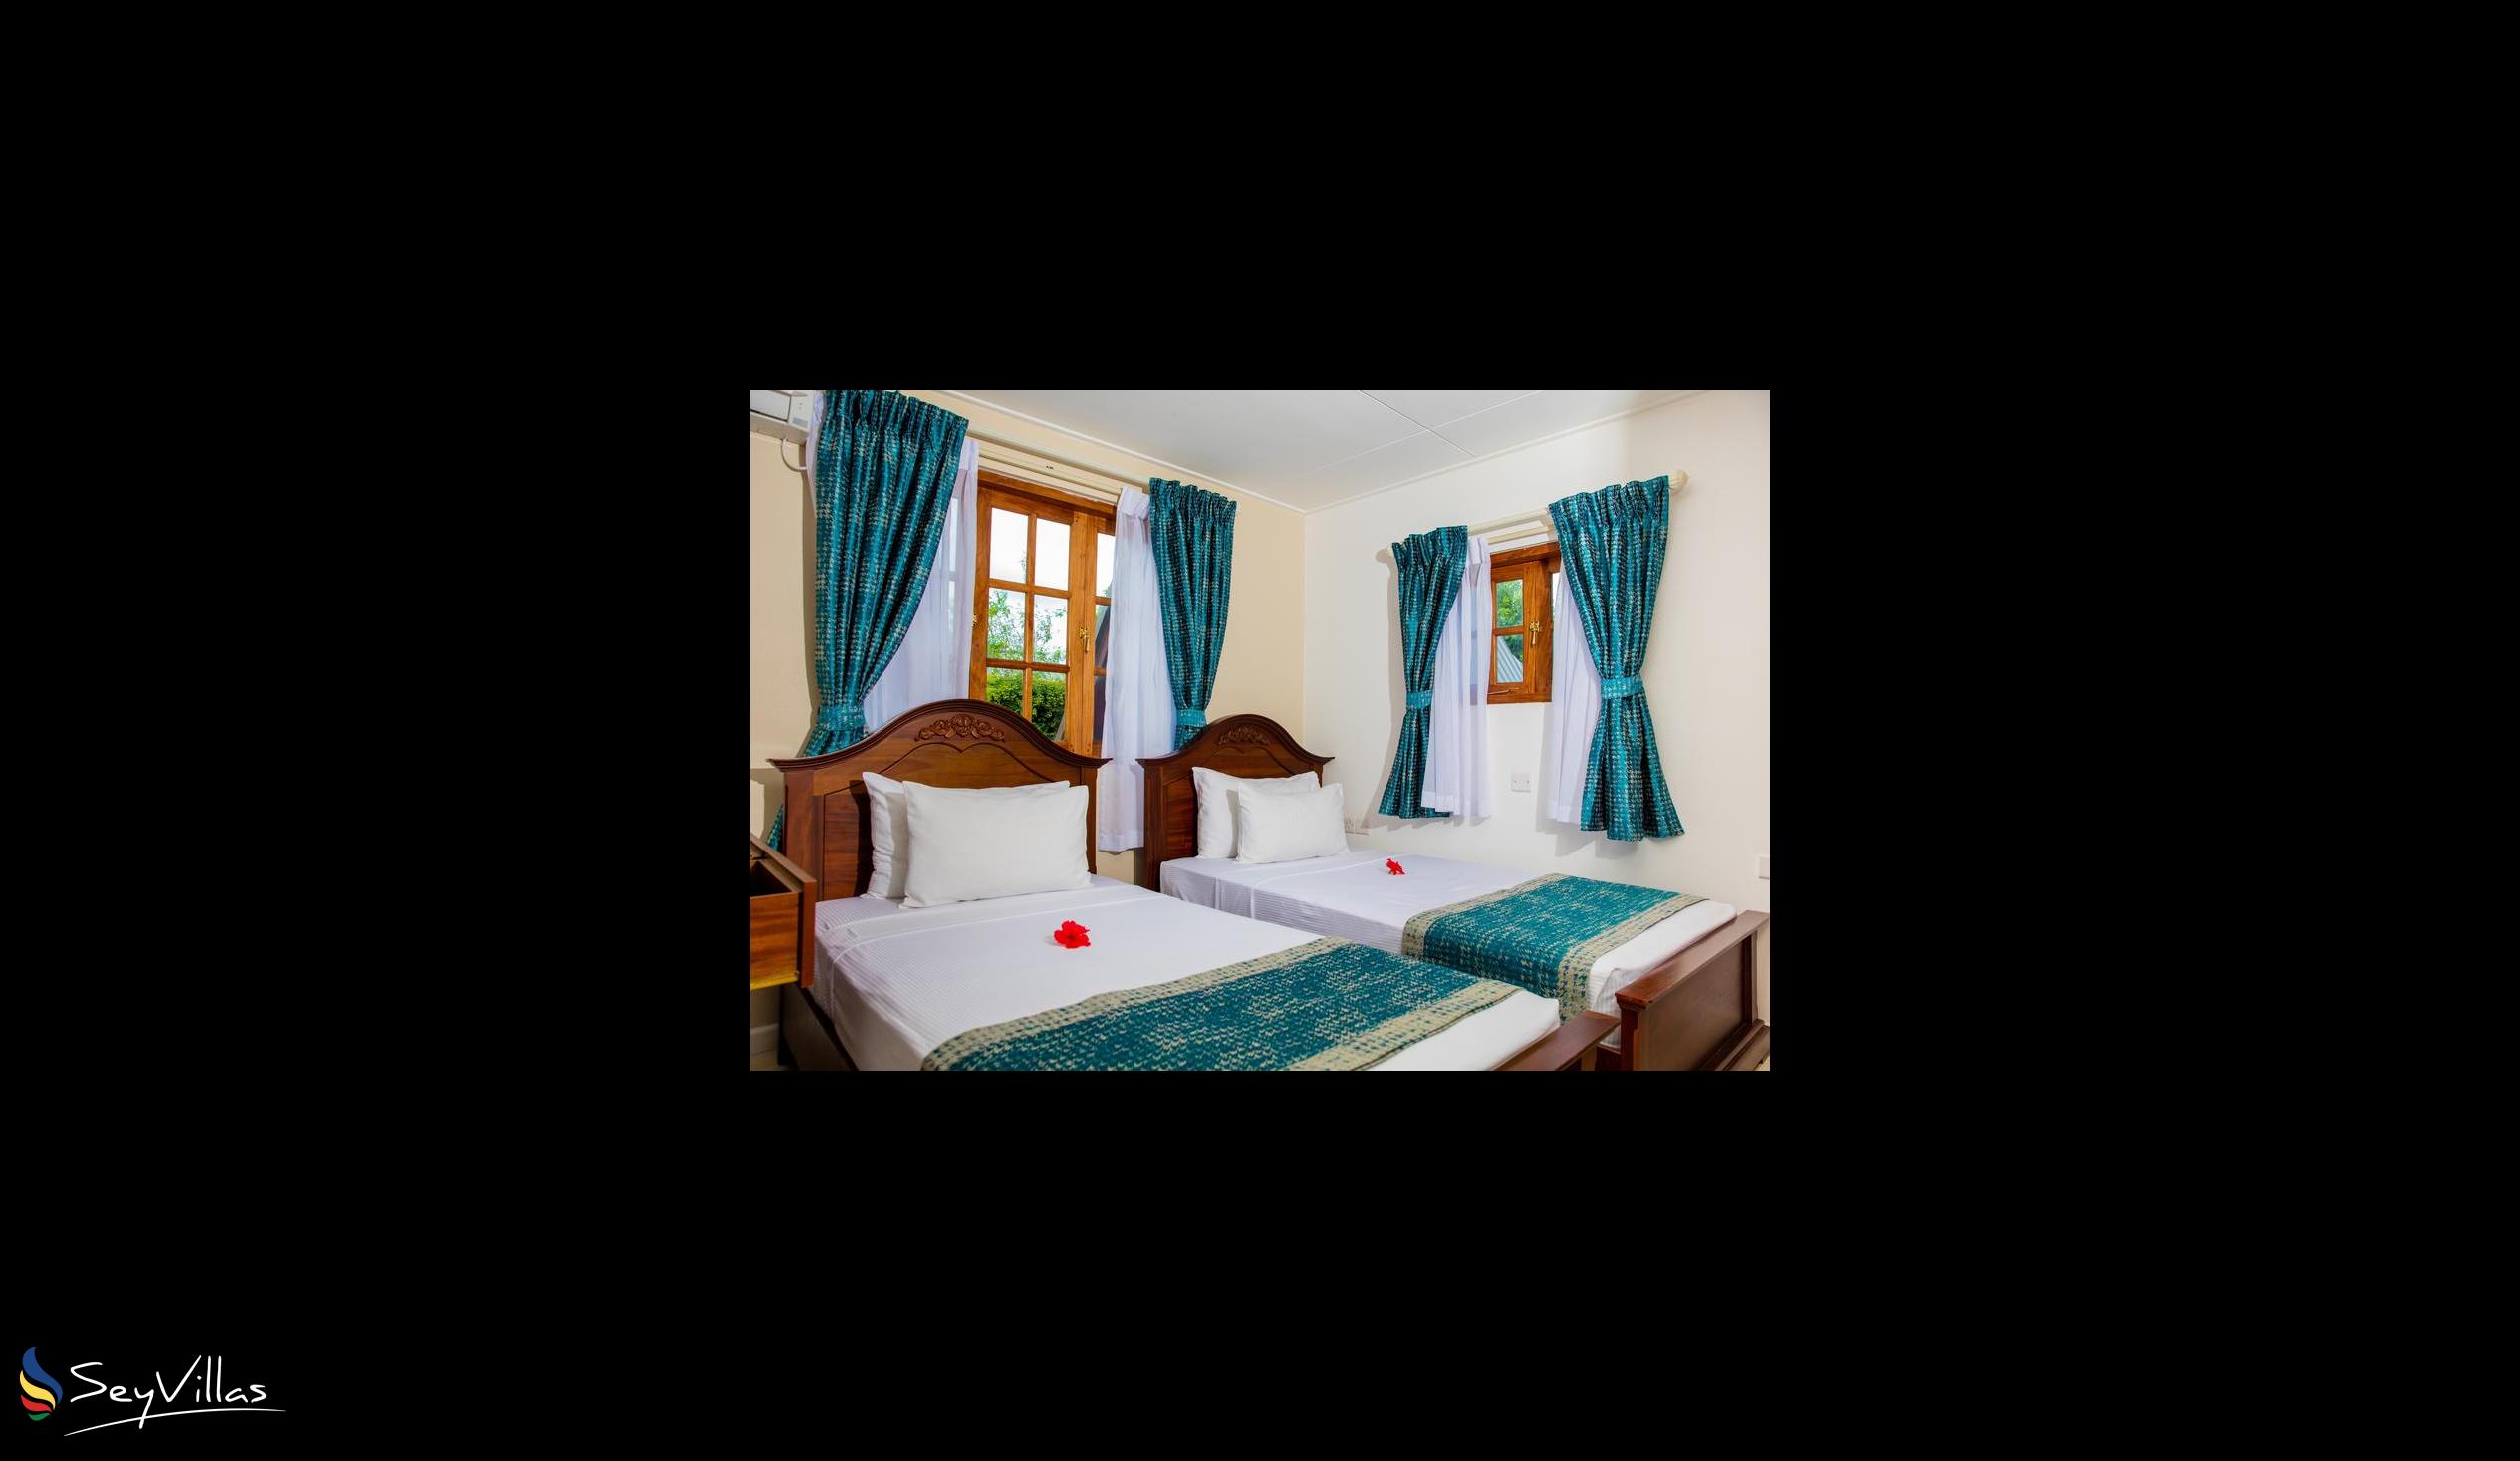 Photo 108: La Digue Island Lodge - 2-Bedroom Beach House Suite - La Digue (Seychelles)